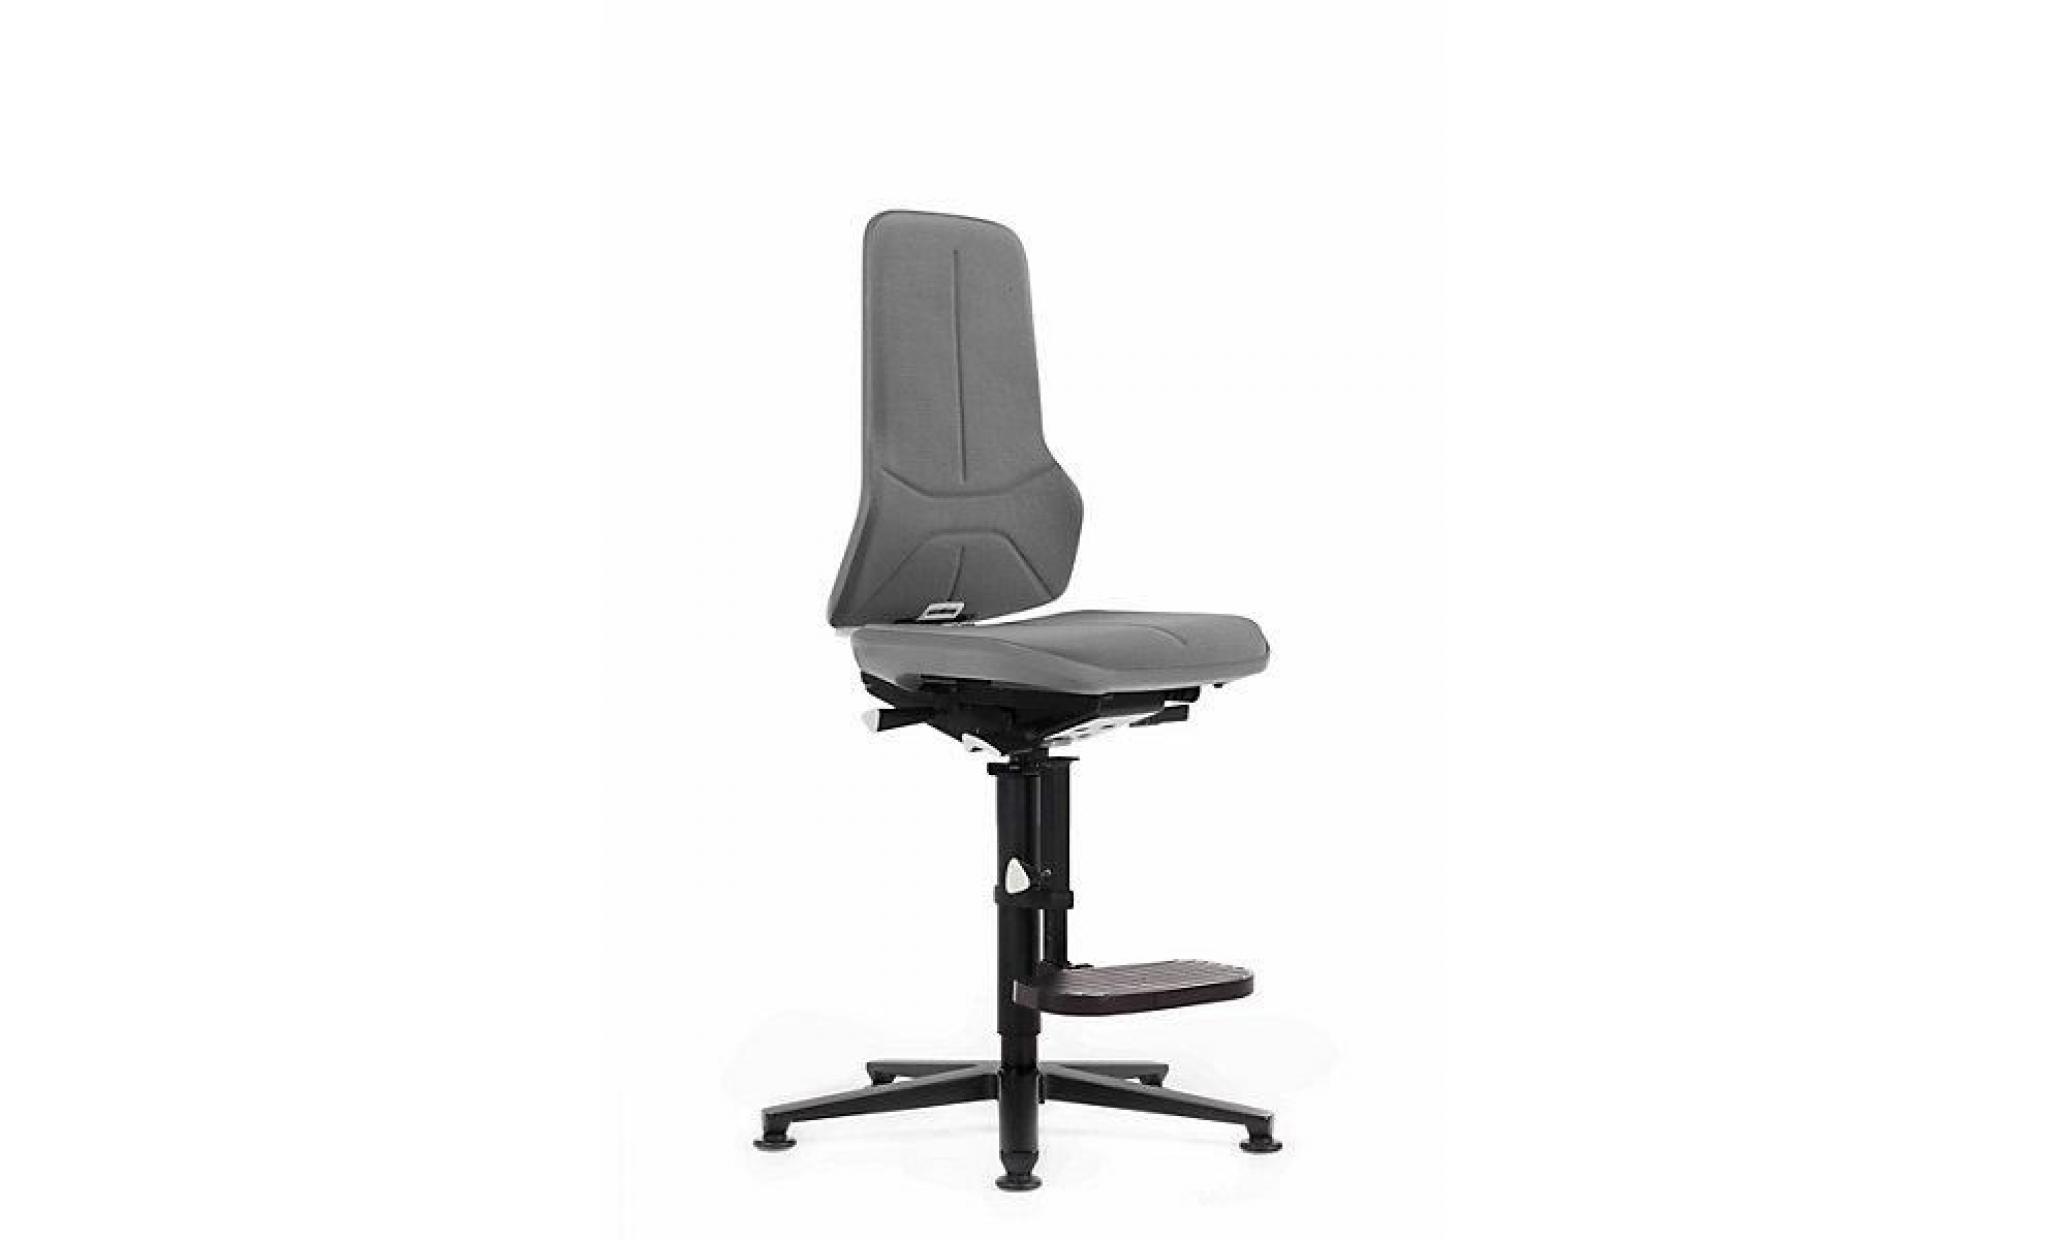 bimos siège d'atelier à piétement en aluminium   avec patins supertec, bande flexible grise   chaise chaise d'atelier chaises